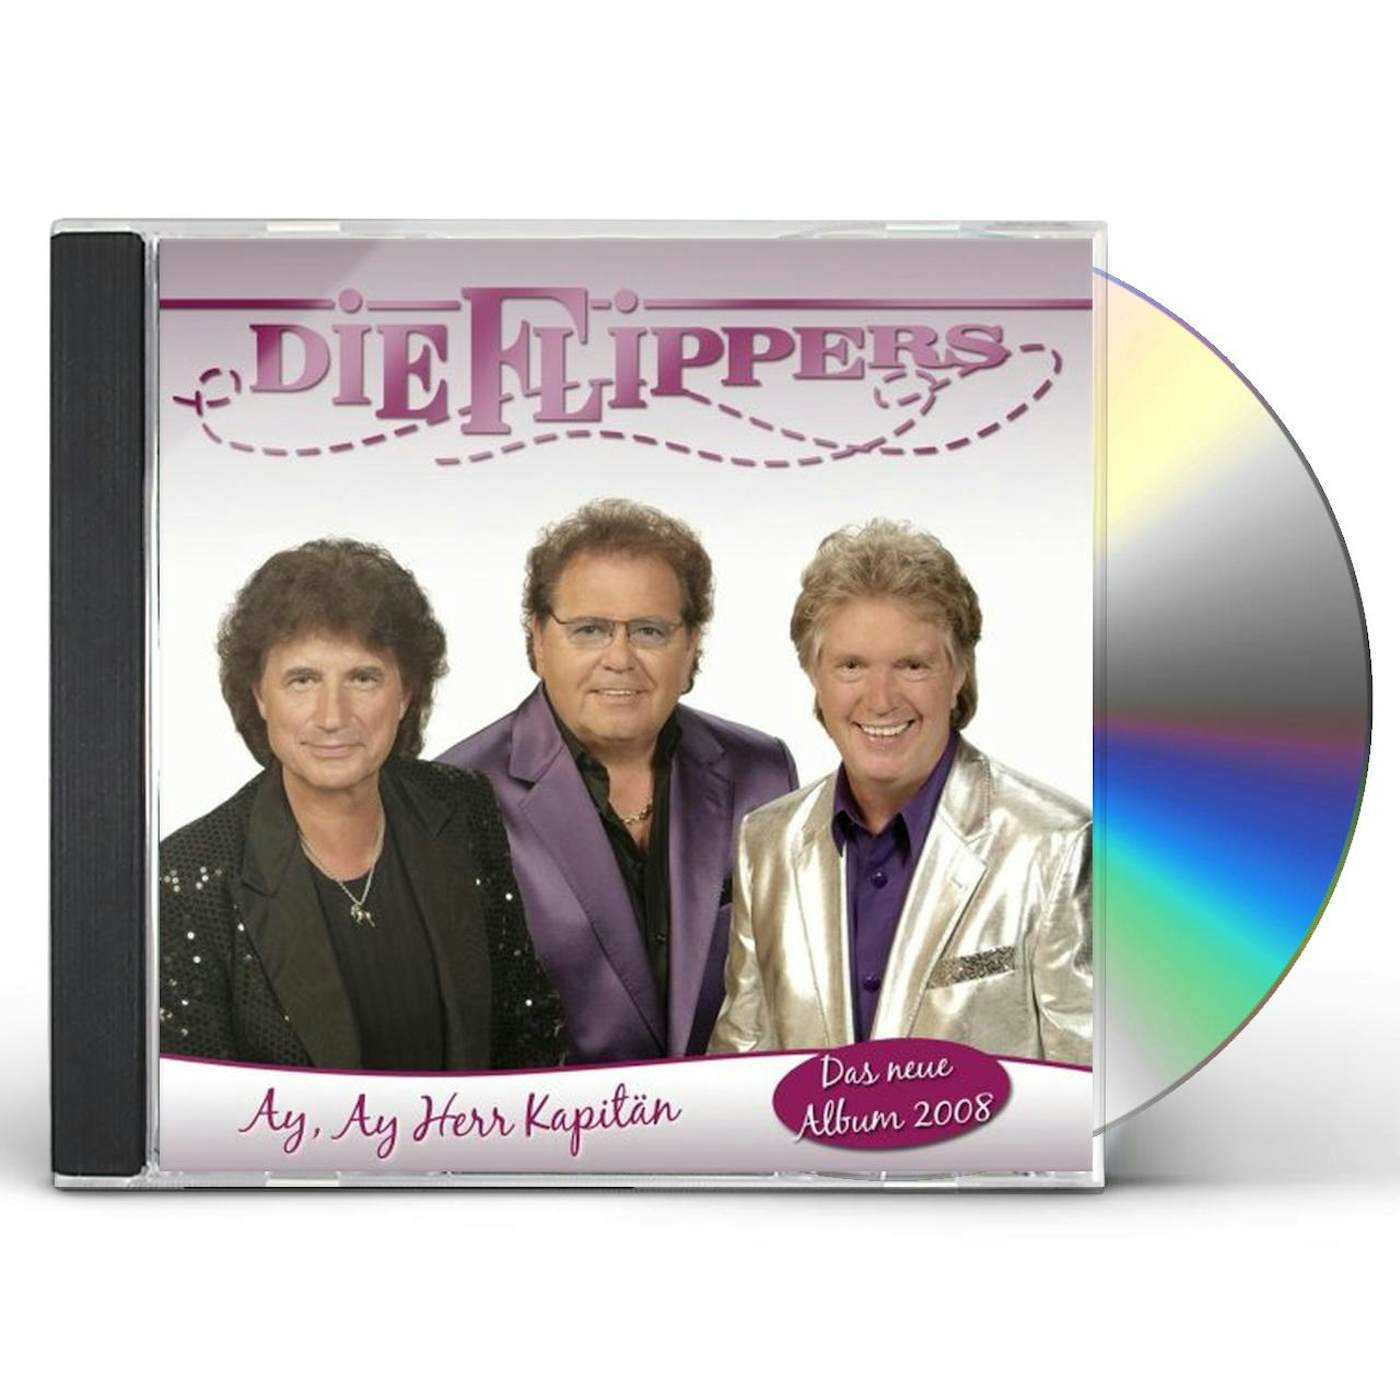 Die Flippers AY AY HERR KAPITAN CD